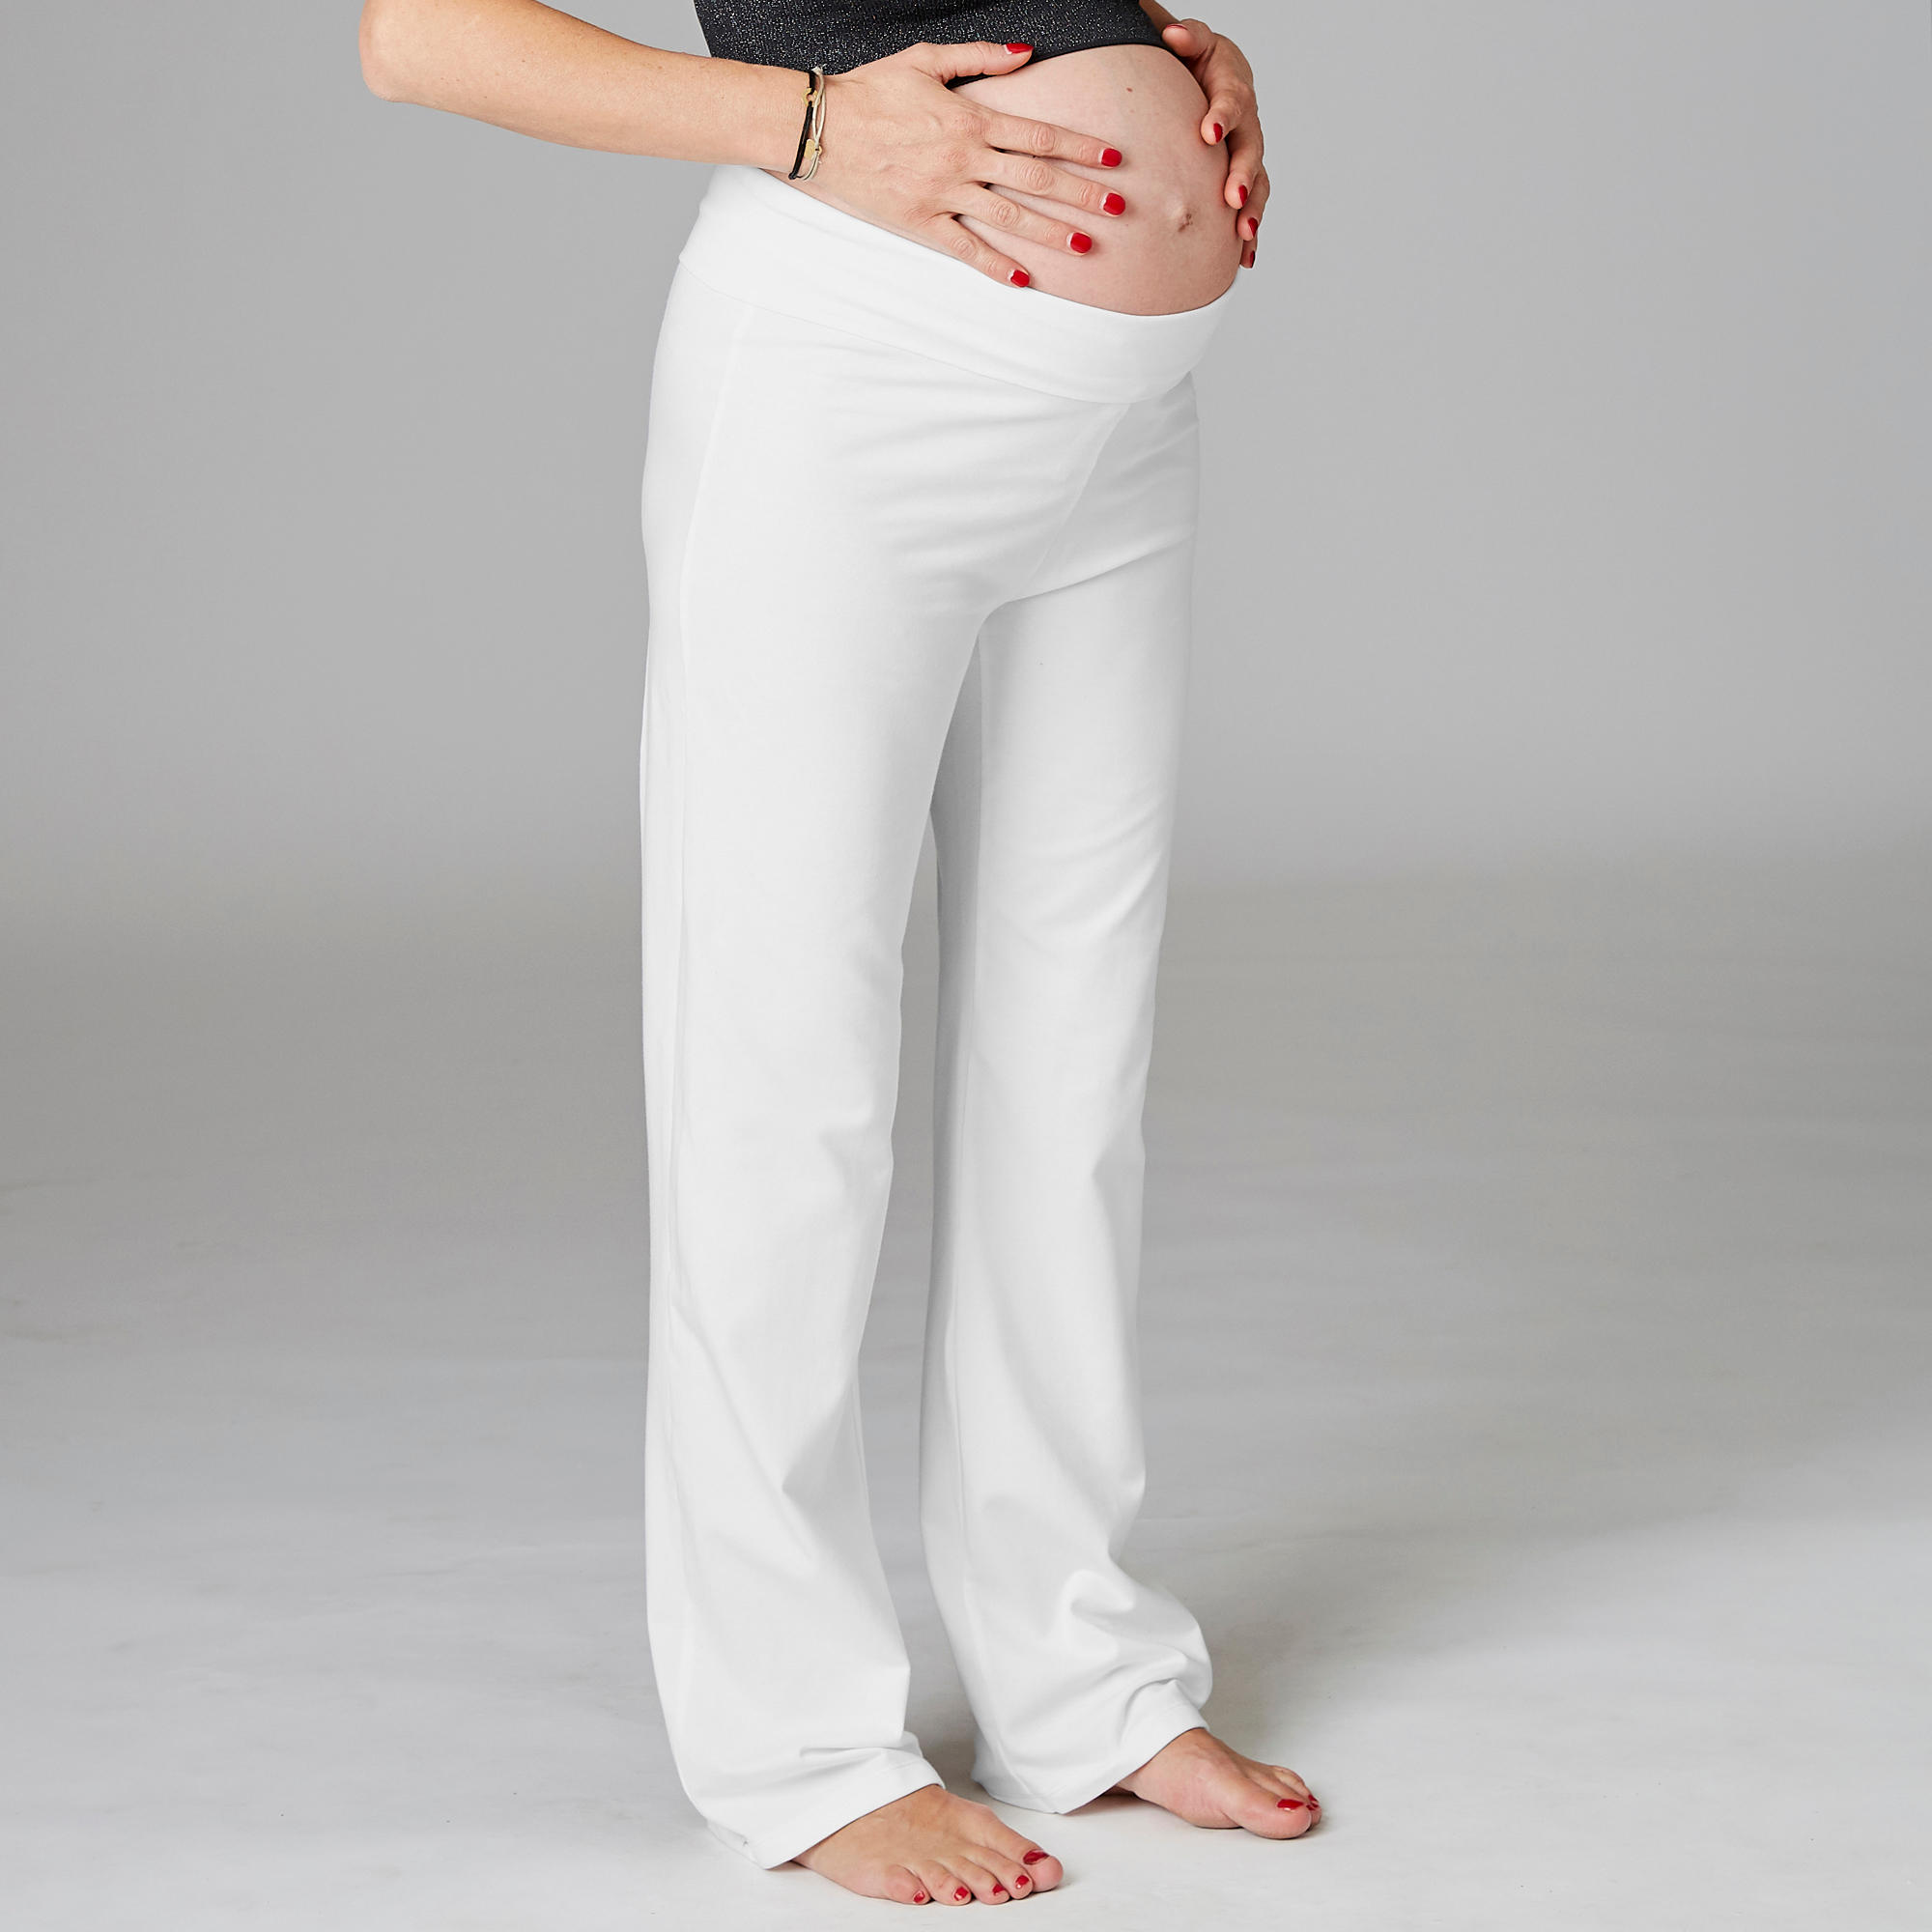 Women's Yoga Cotton Bottoms - White 9/12